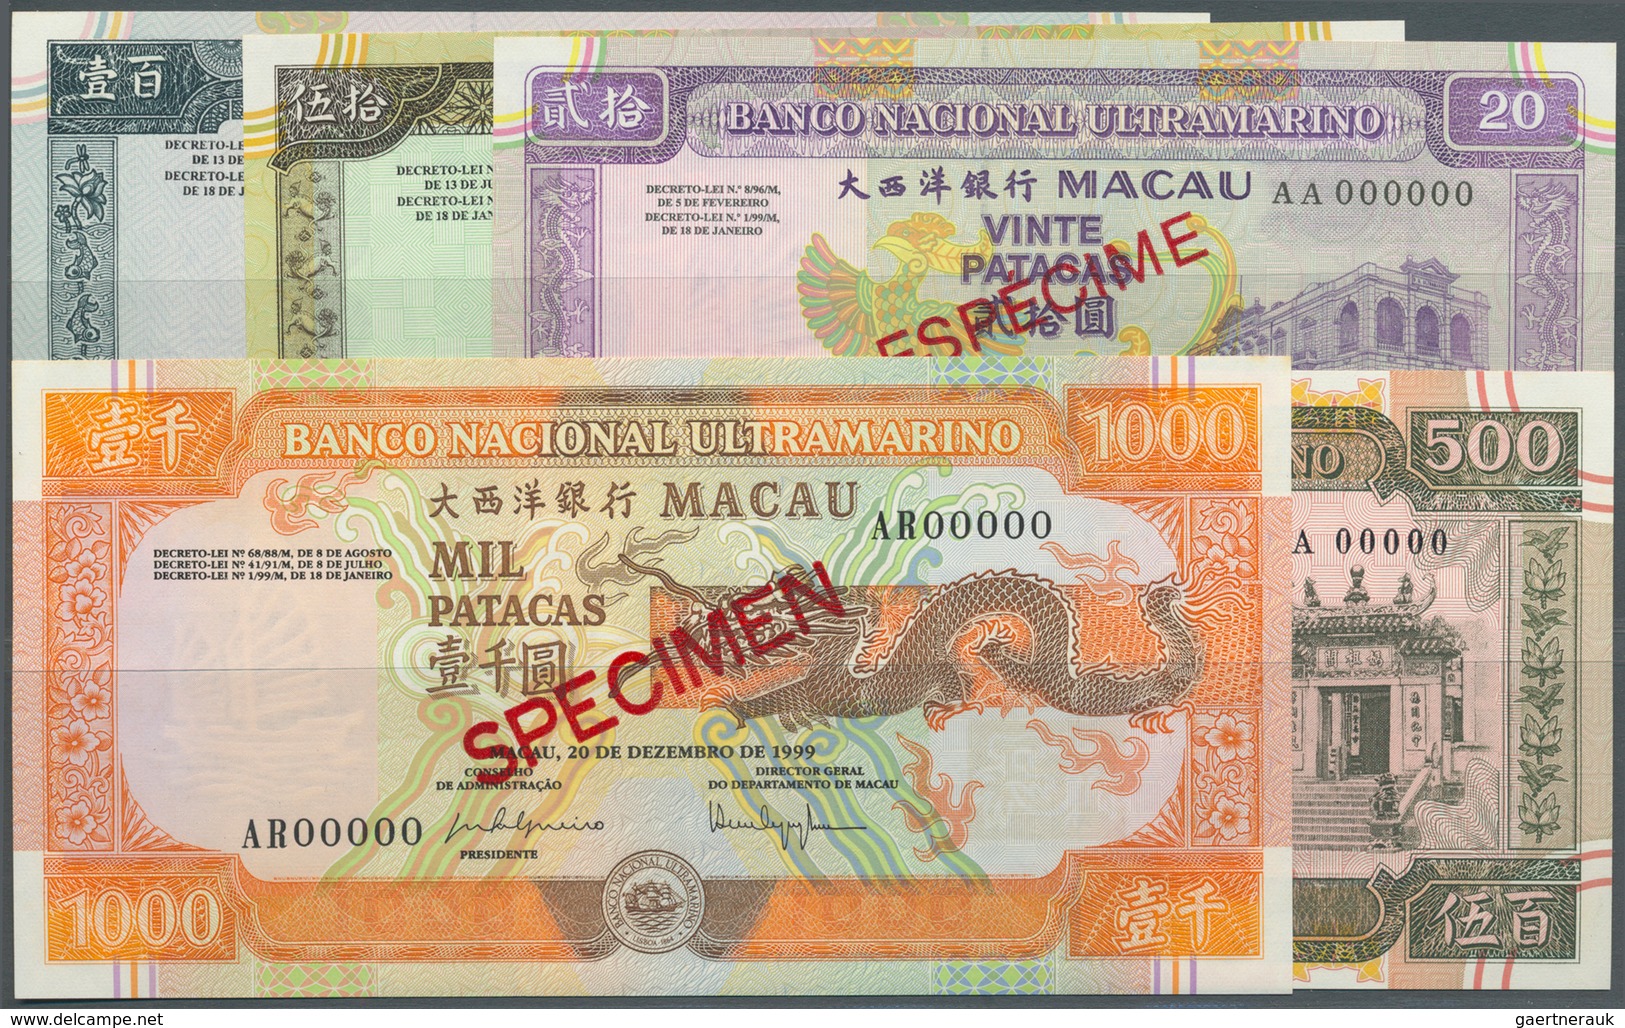 01958 Macau / Macao: Banco Nacional Ultramarino, Highly Rare Specimen Set Of The December 20th 1999 Series - Macau